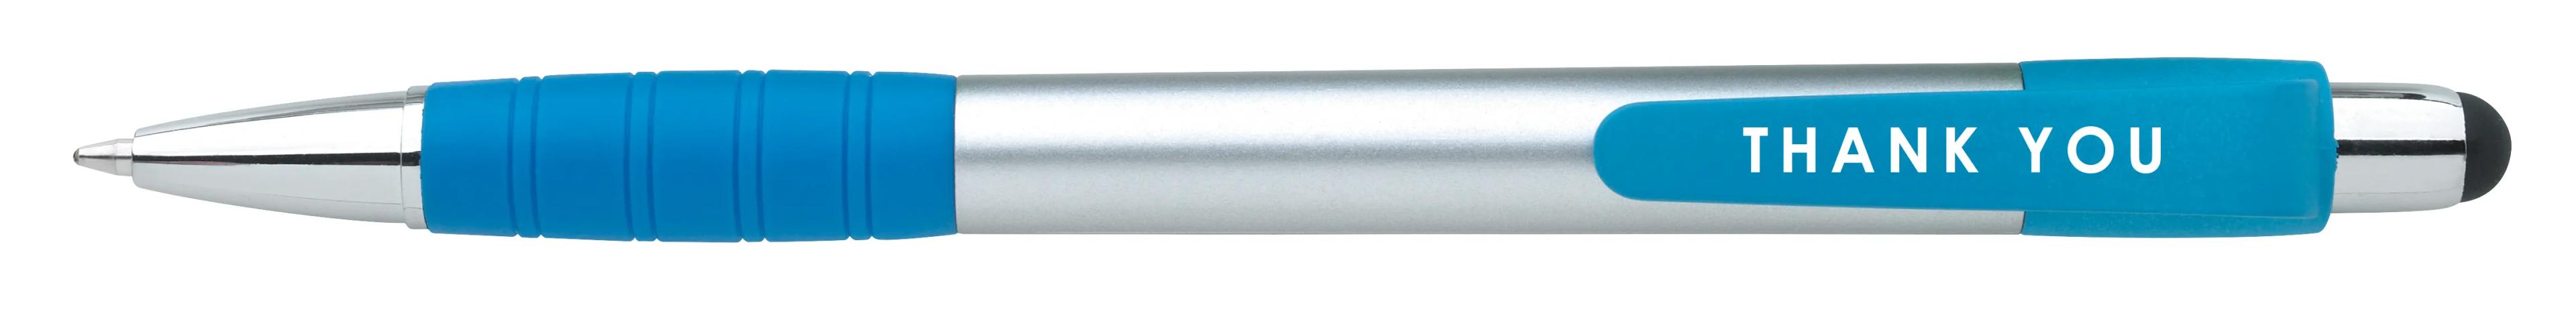 Silver Element Stylus Pen 52 of 53